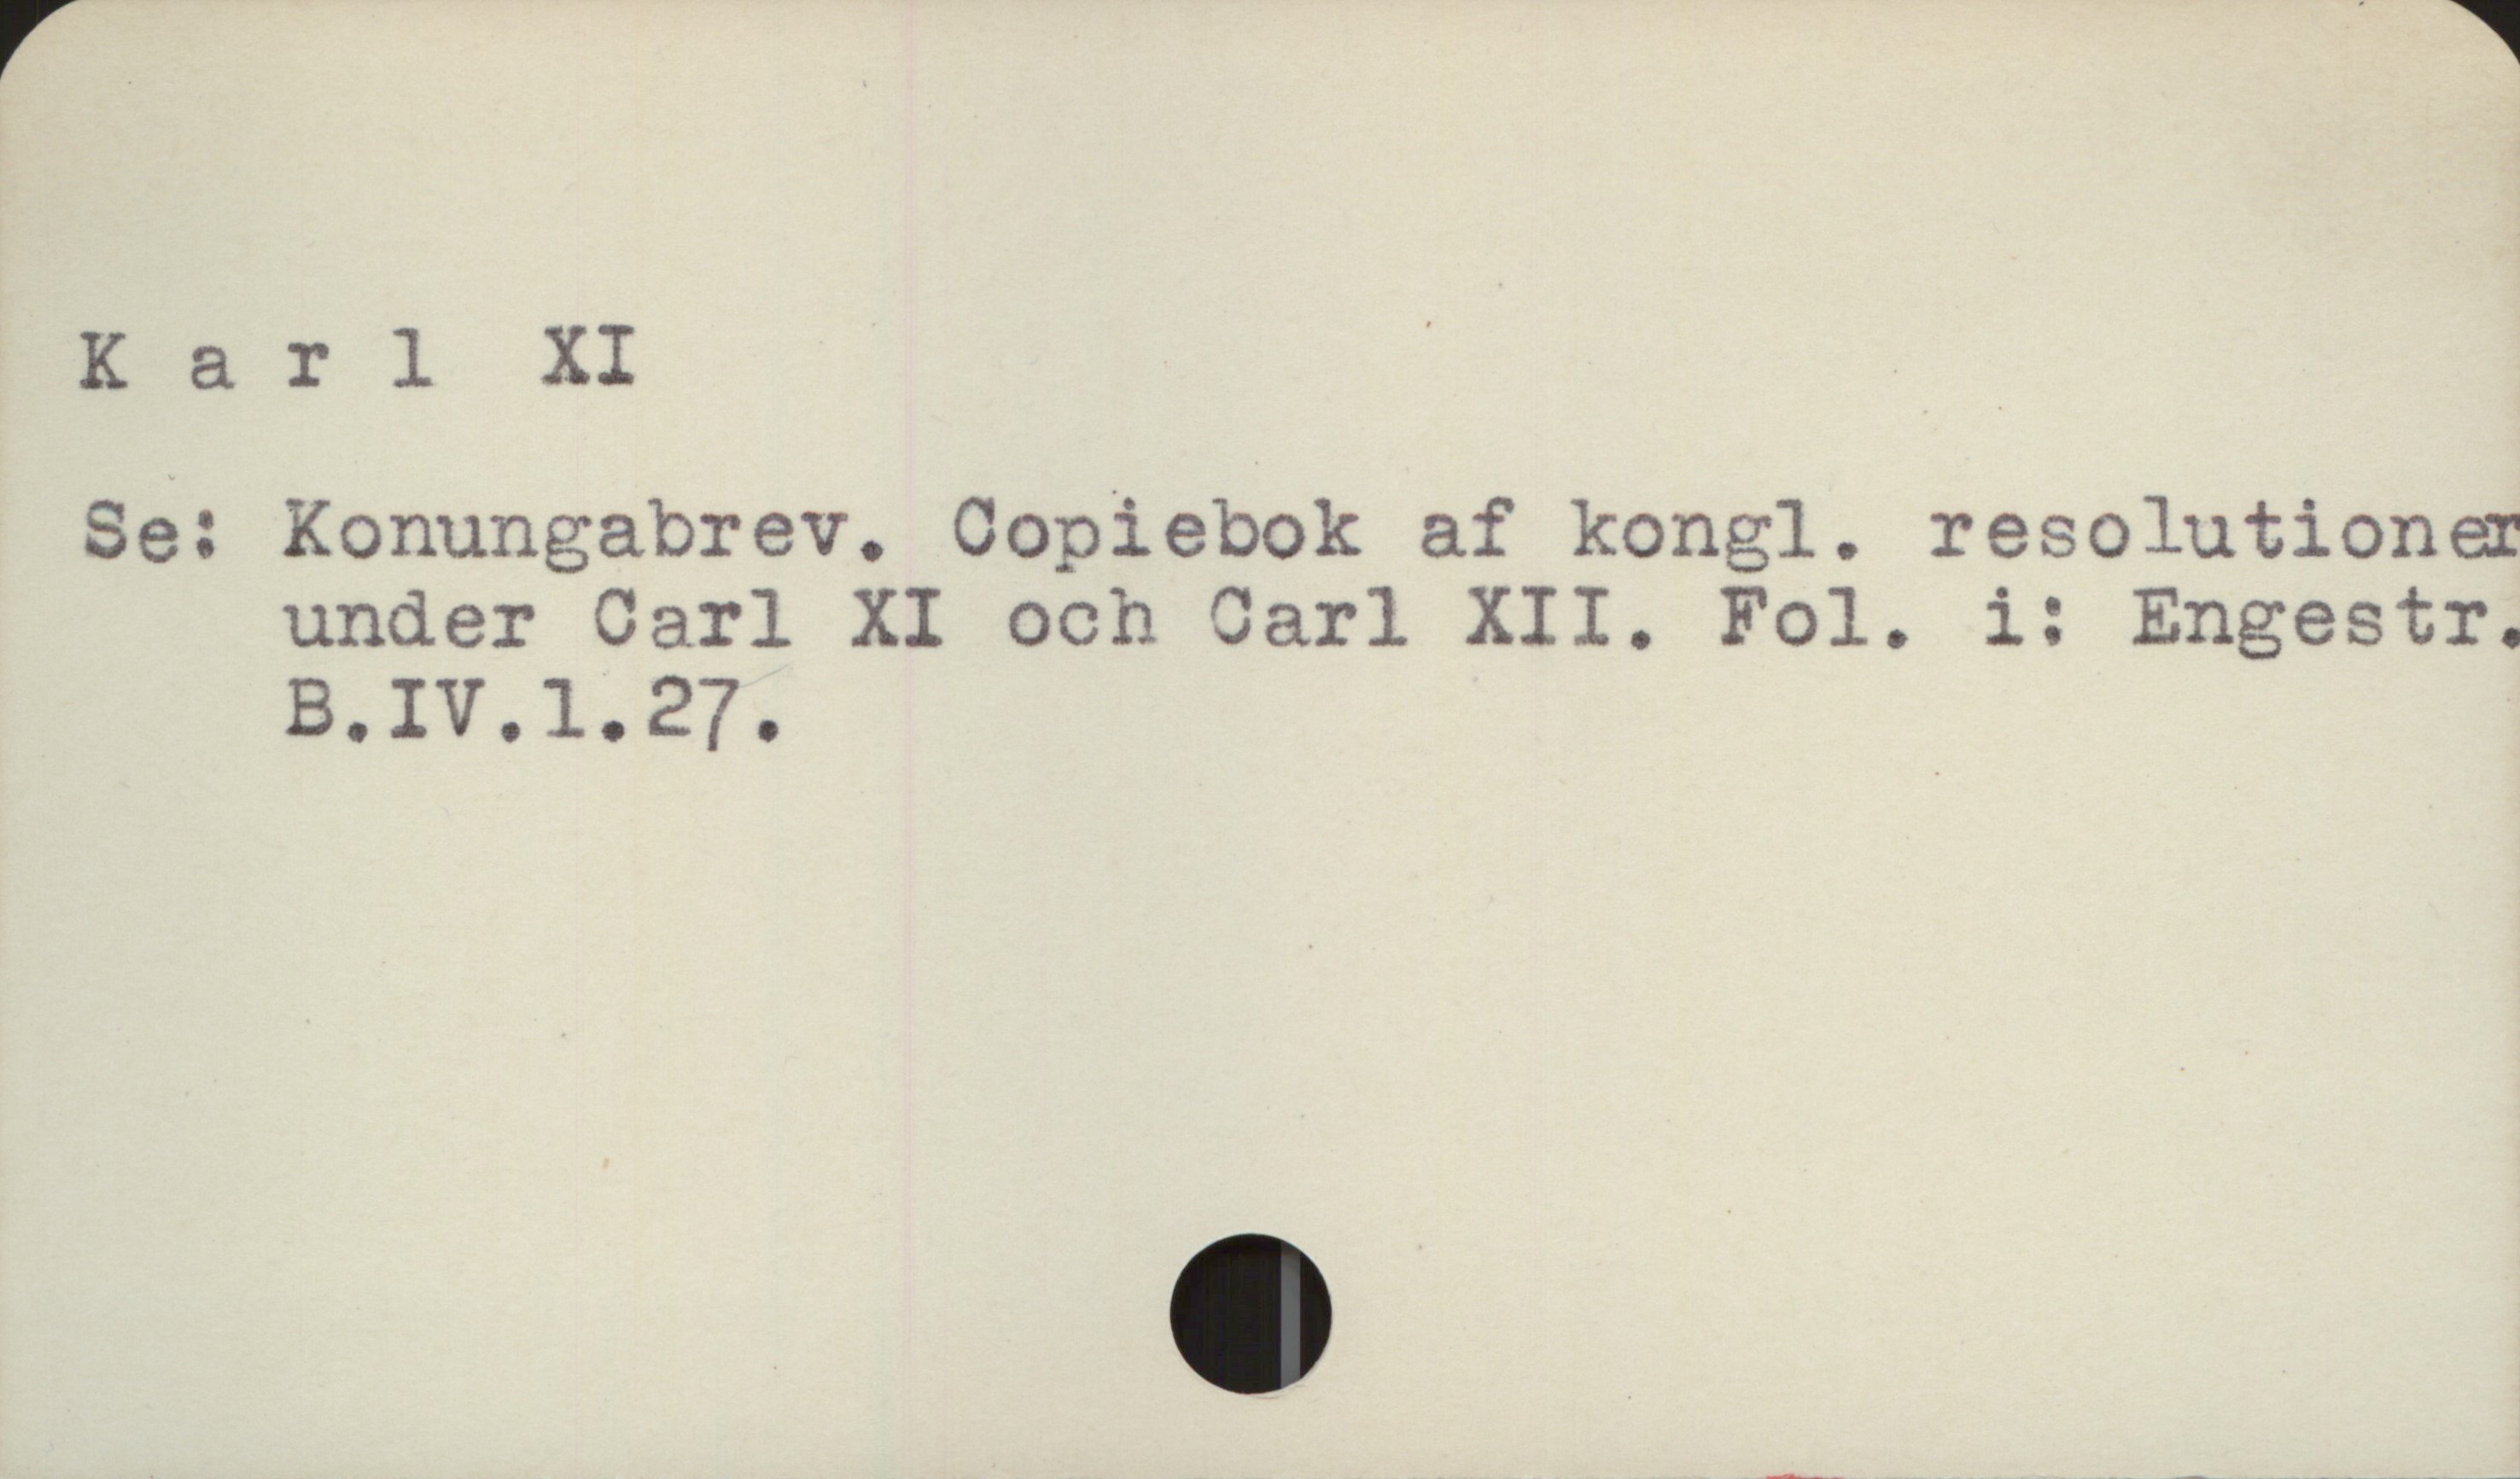  Karl XI ' .

Se: Konungabrev. Copiebok af kongl. resolutione
under Carl XI och Carl XII,. Fol. i: Engestr.
B., IV. l. 27.

